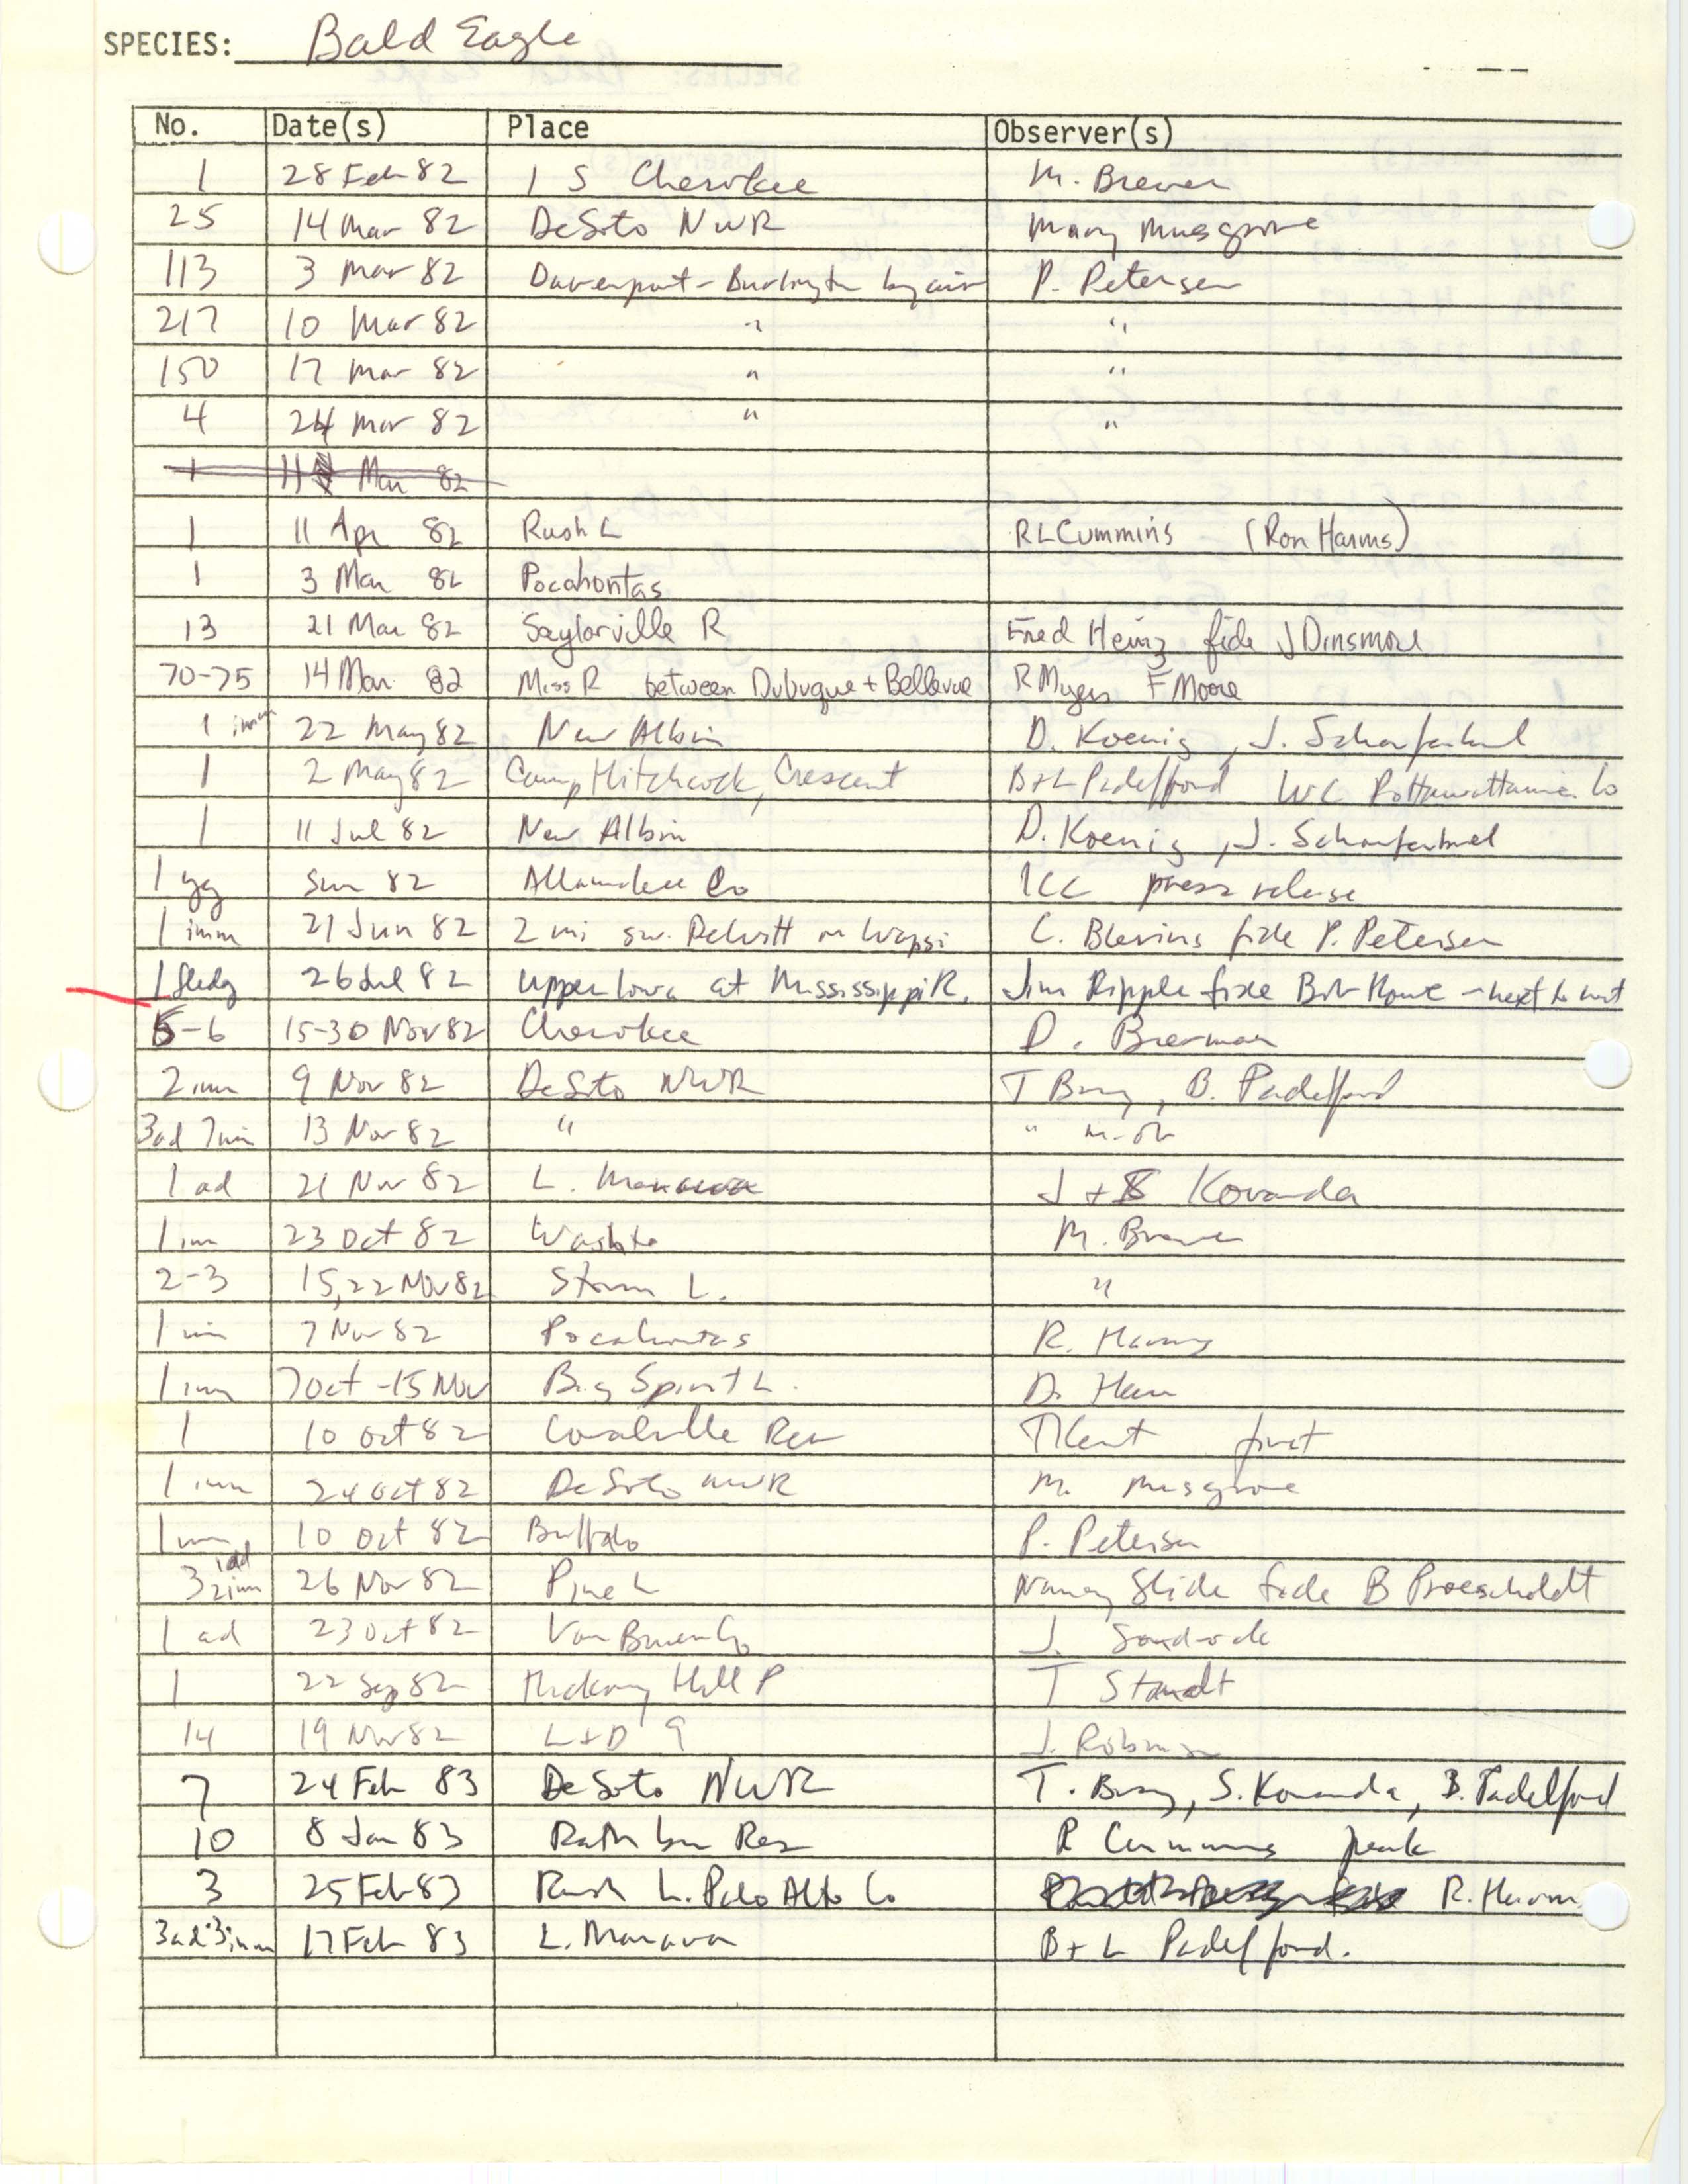 Iowa Ornithologists' Union, field report compiled data, Bald Eagle, 1982-1983